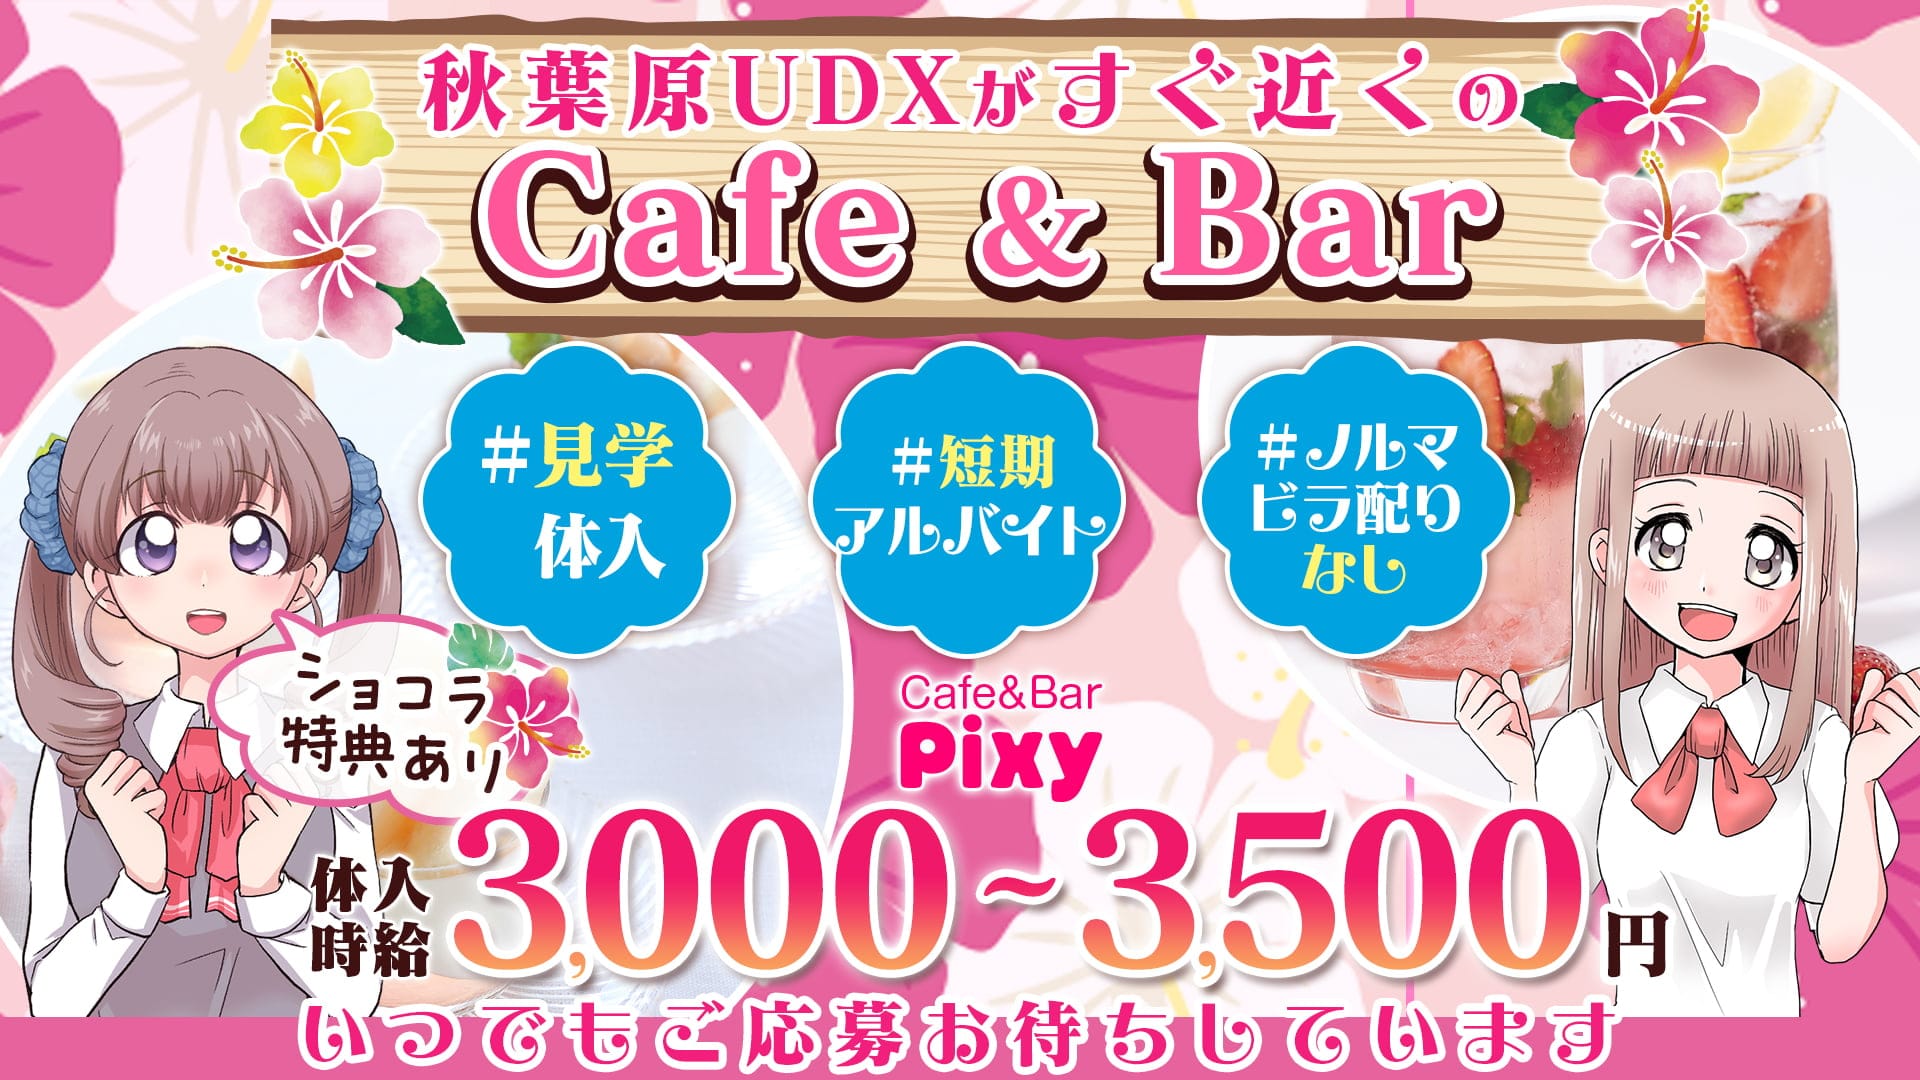 Cafe&Bar Pixy(ピクシー)【公式求人・体入情報】 秋葉原ガールズバー TOP画像